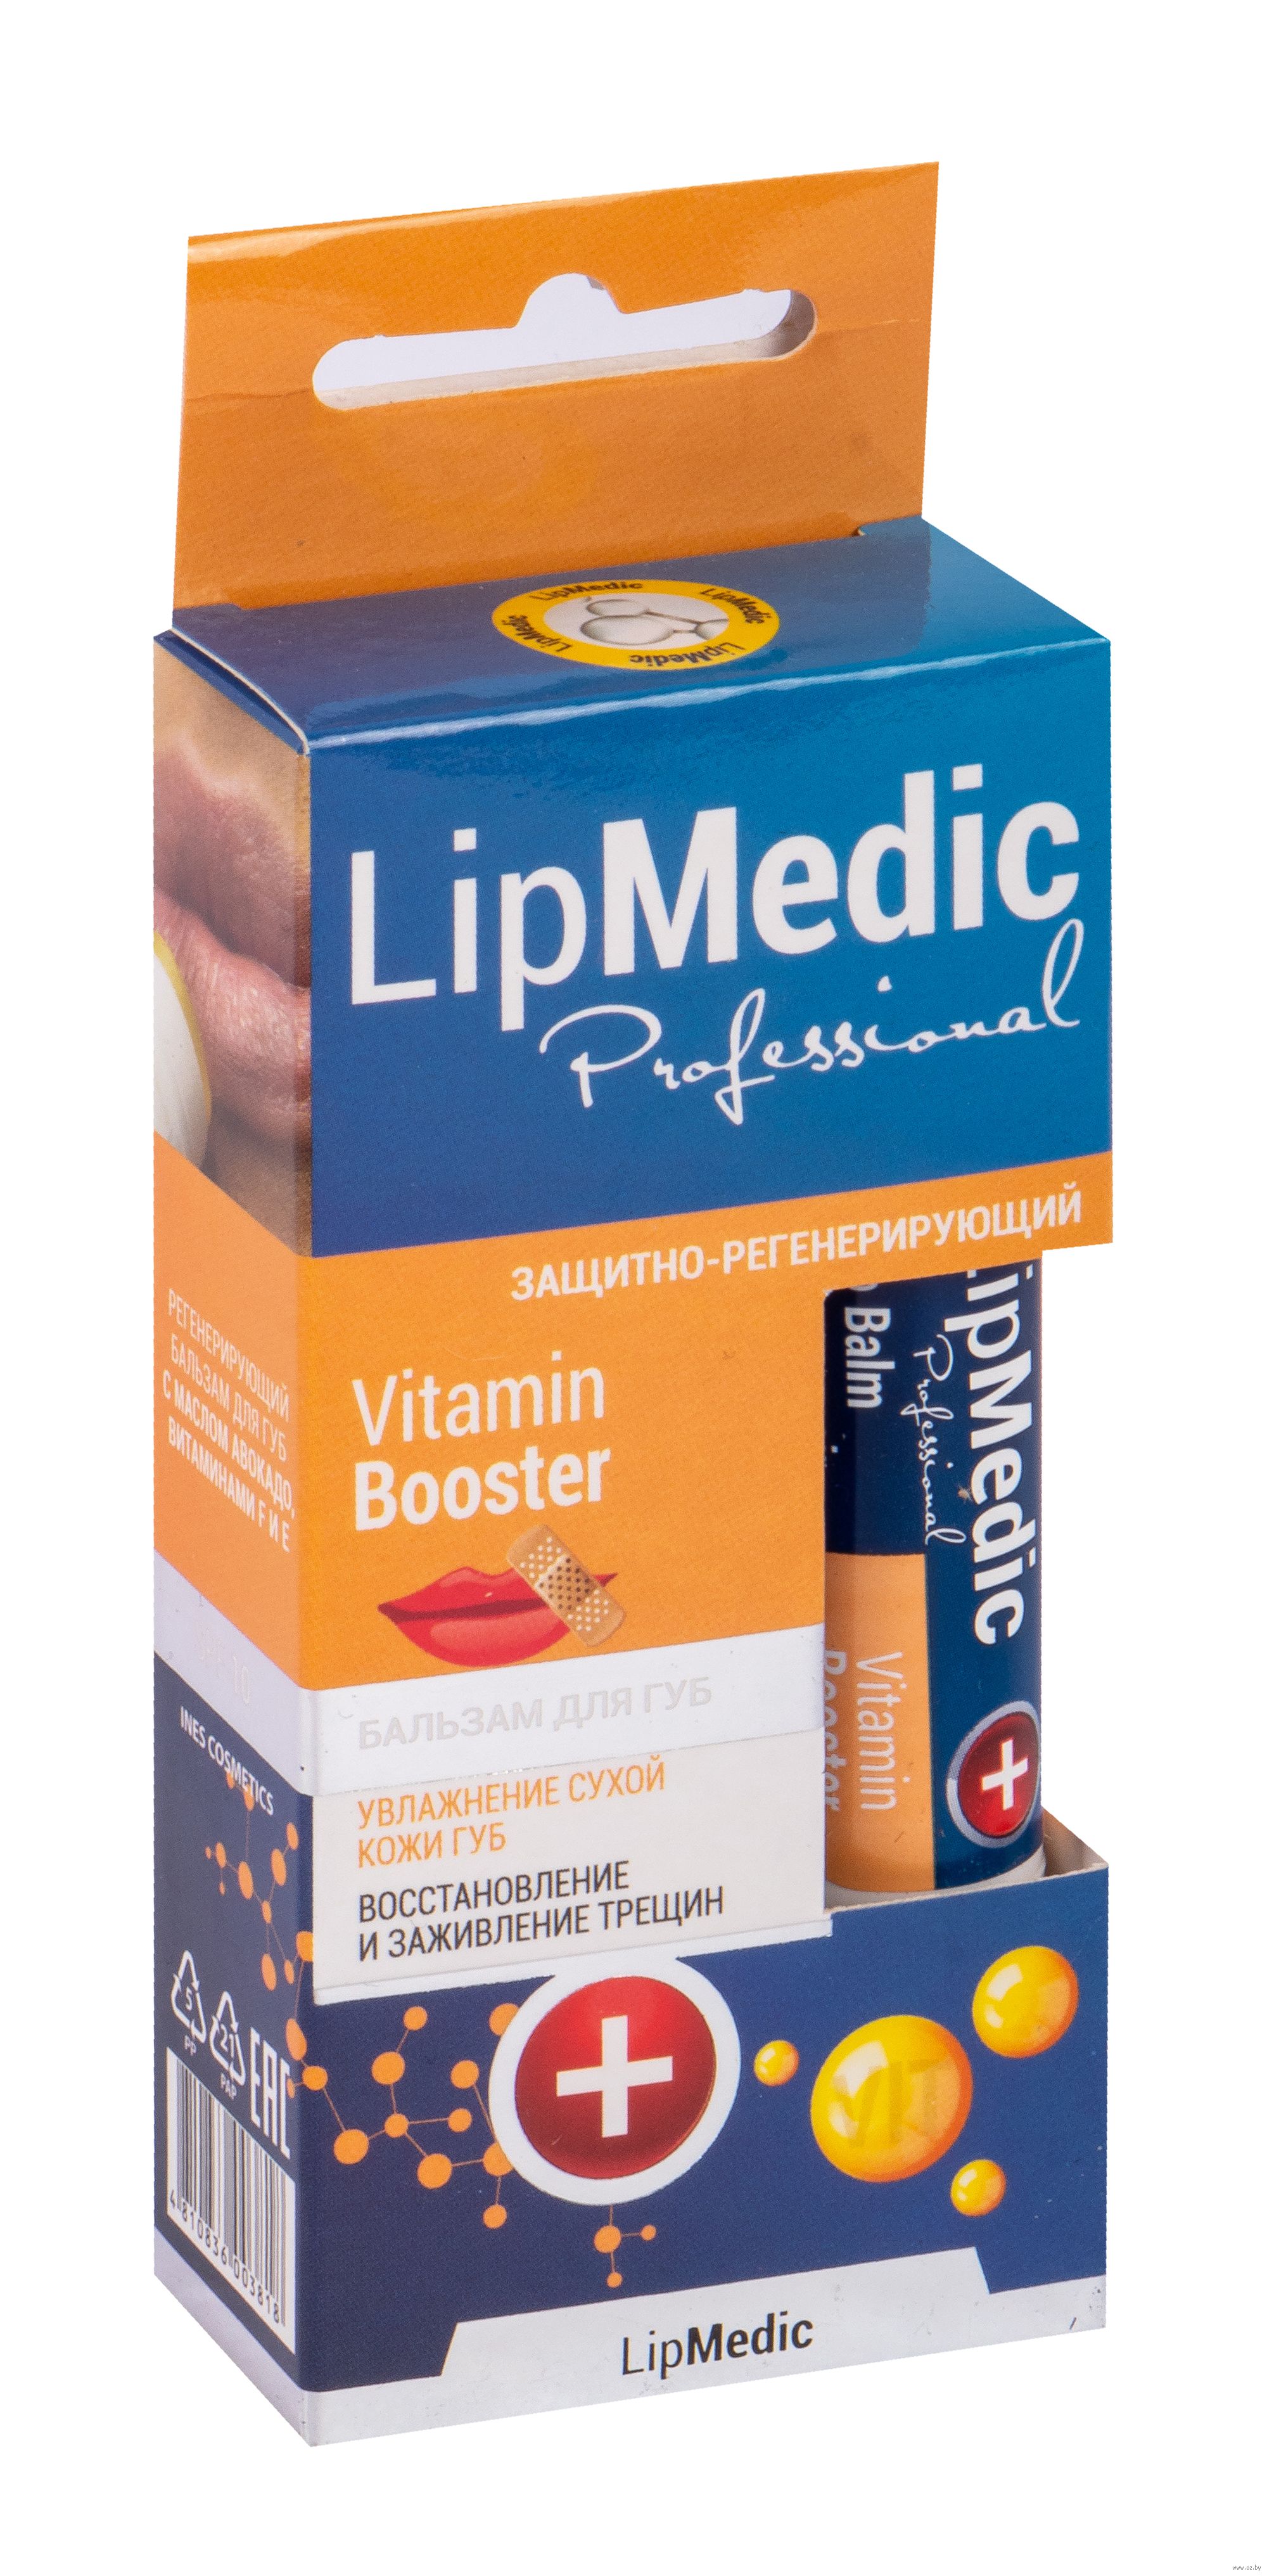 Vitamin booster. Ines Cosmetics Lipmedic 9 в 1 гигиеническая помада. Крем лизобакт. Колдакт порошок. Lysobact крем.